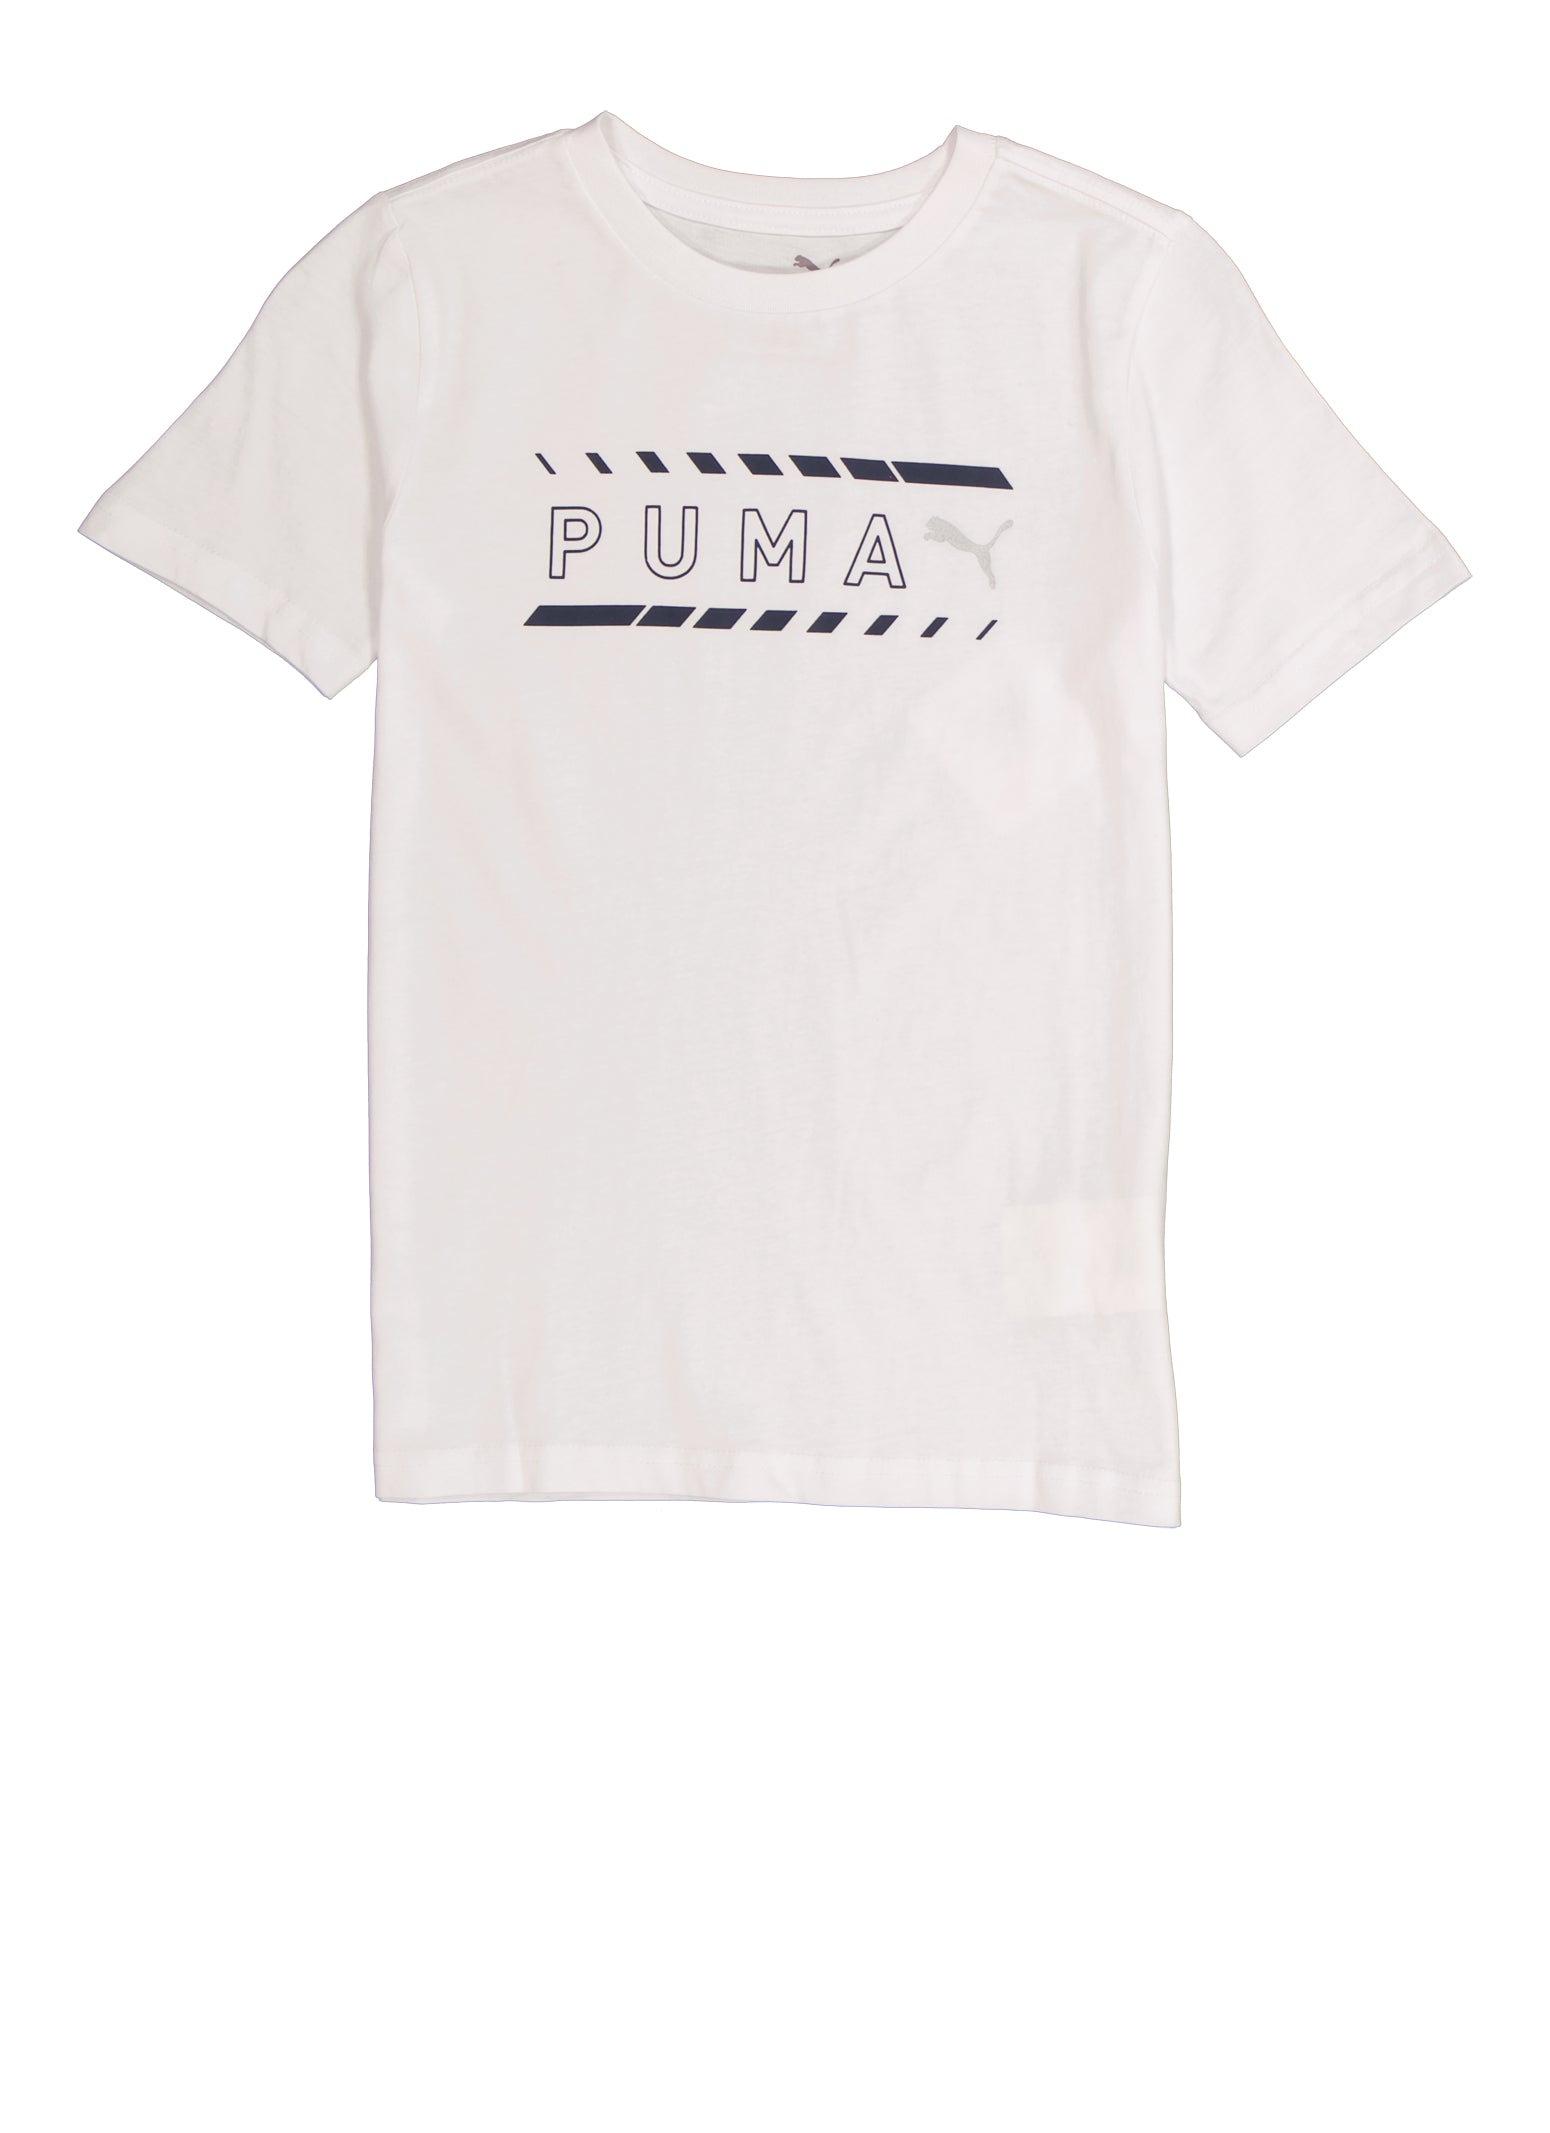 Boys Puma Basic Logo Short Sleeve Graphic Tee, White, Size 14-16